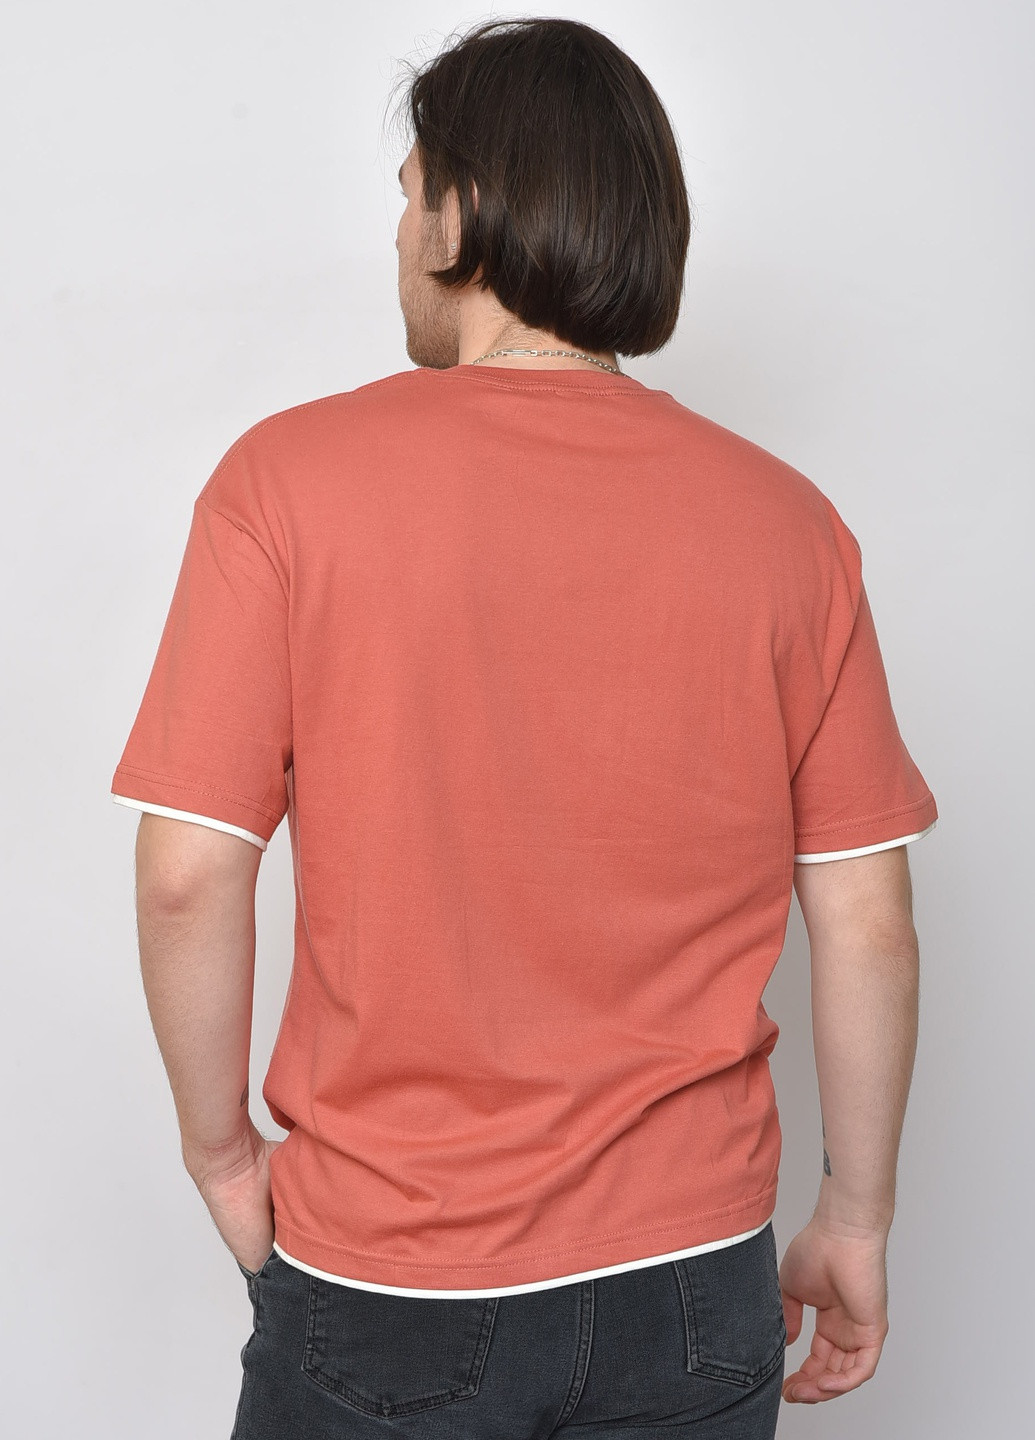 Терракотовая футболка мужская однотонная терракотового цвета Let's Shop